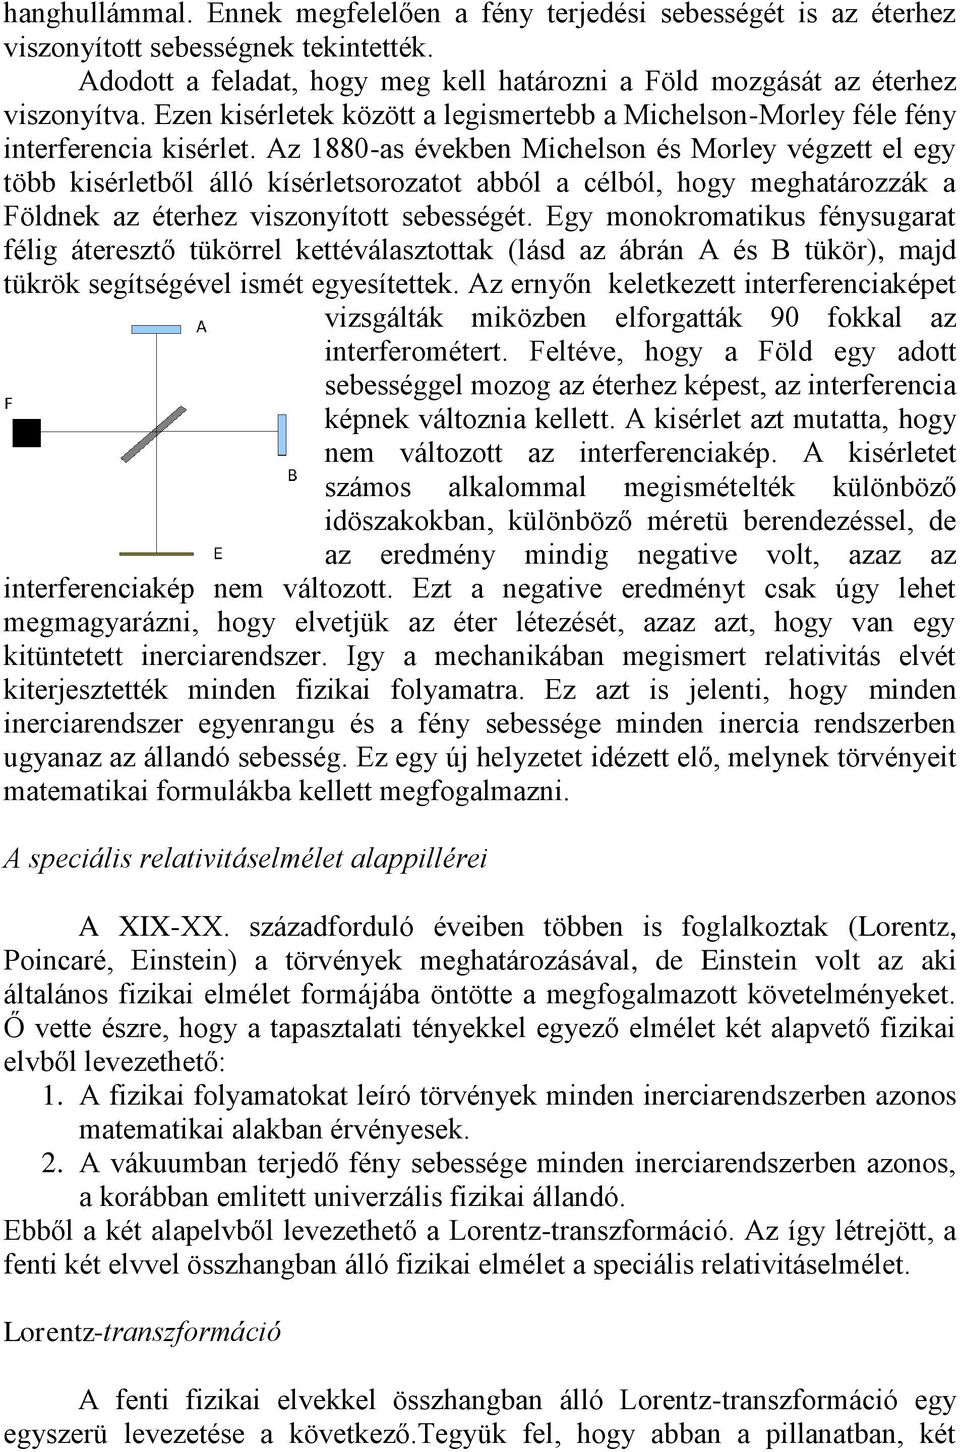 Speciális relativitáselmélet pdf